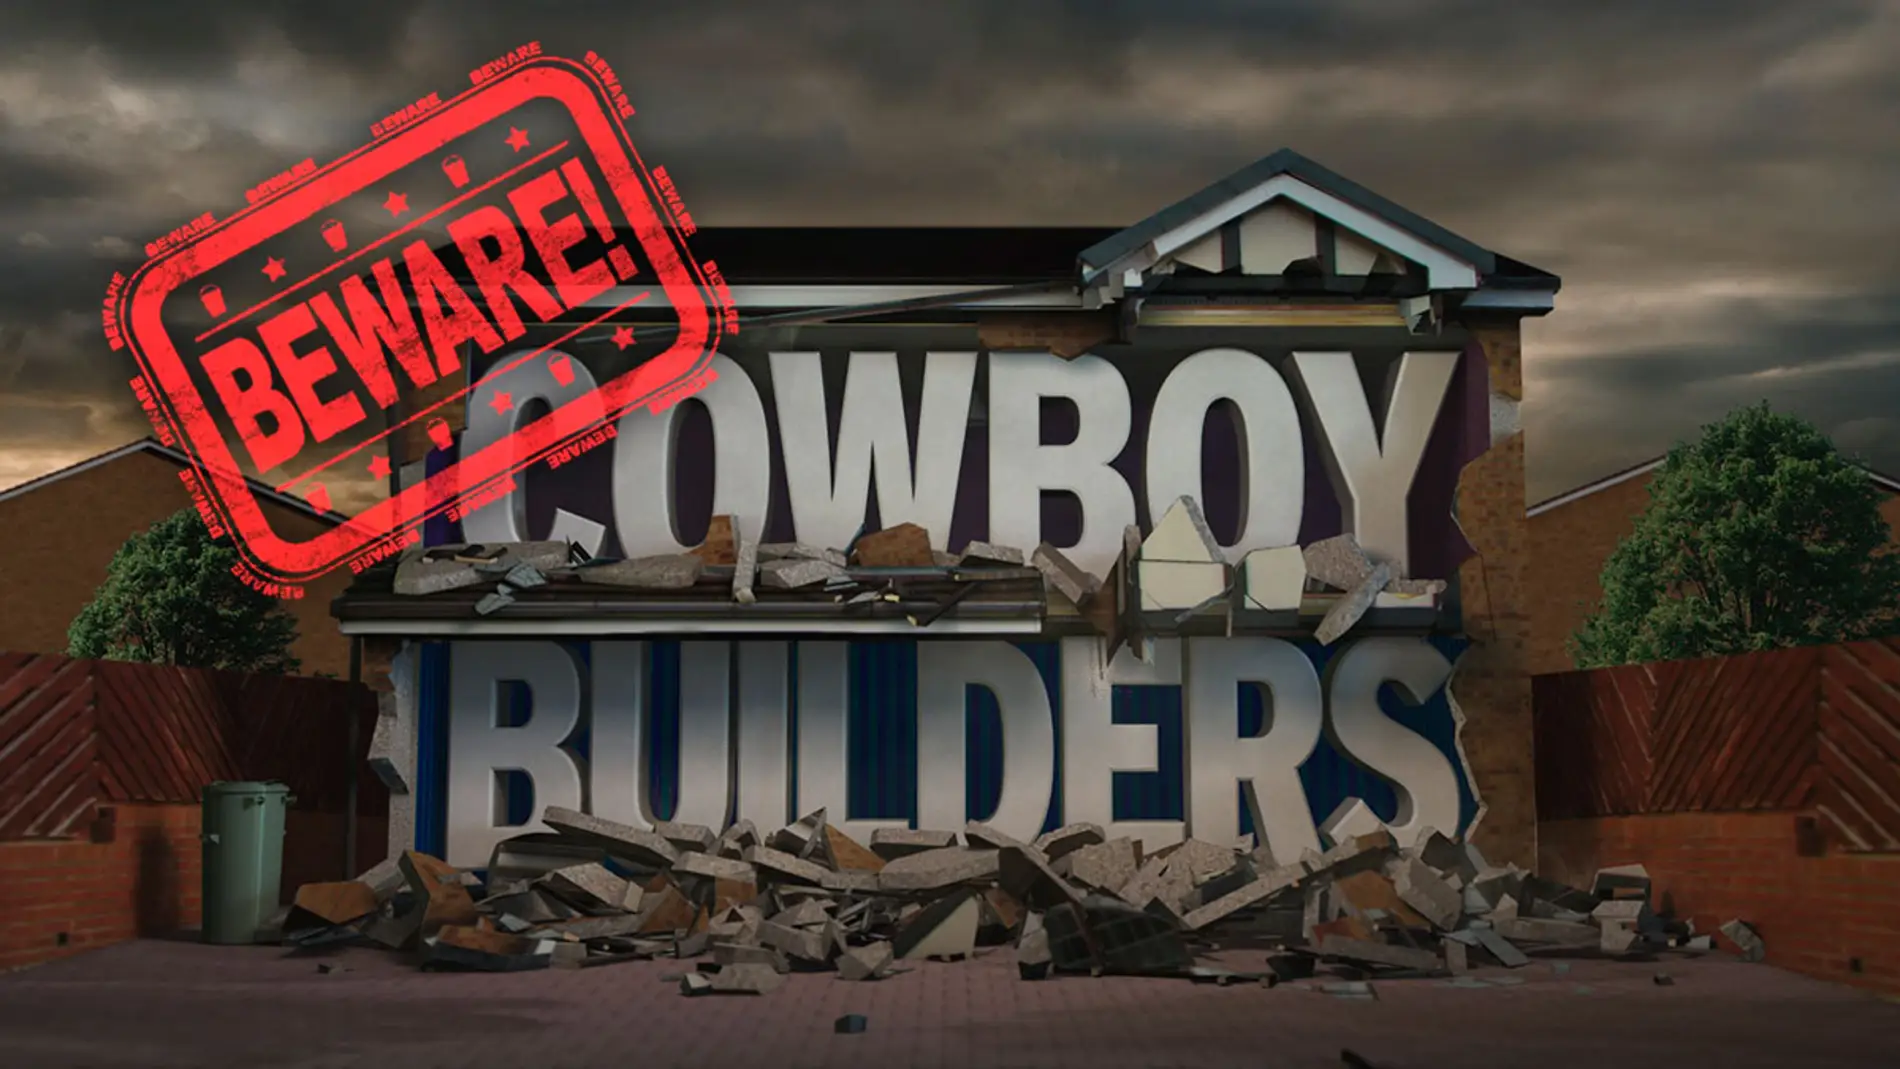 'Cowboy builders'